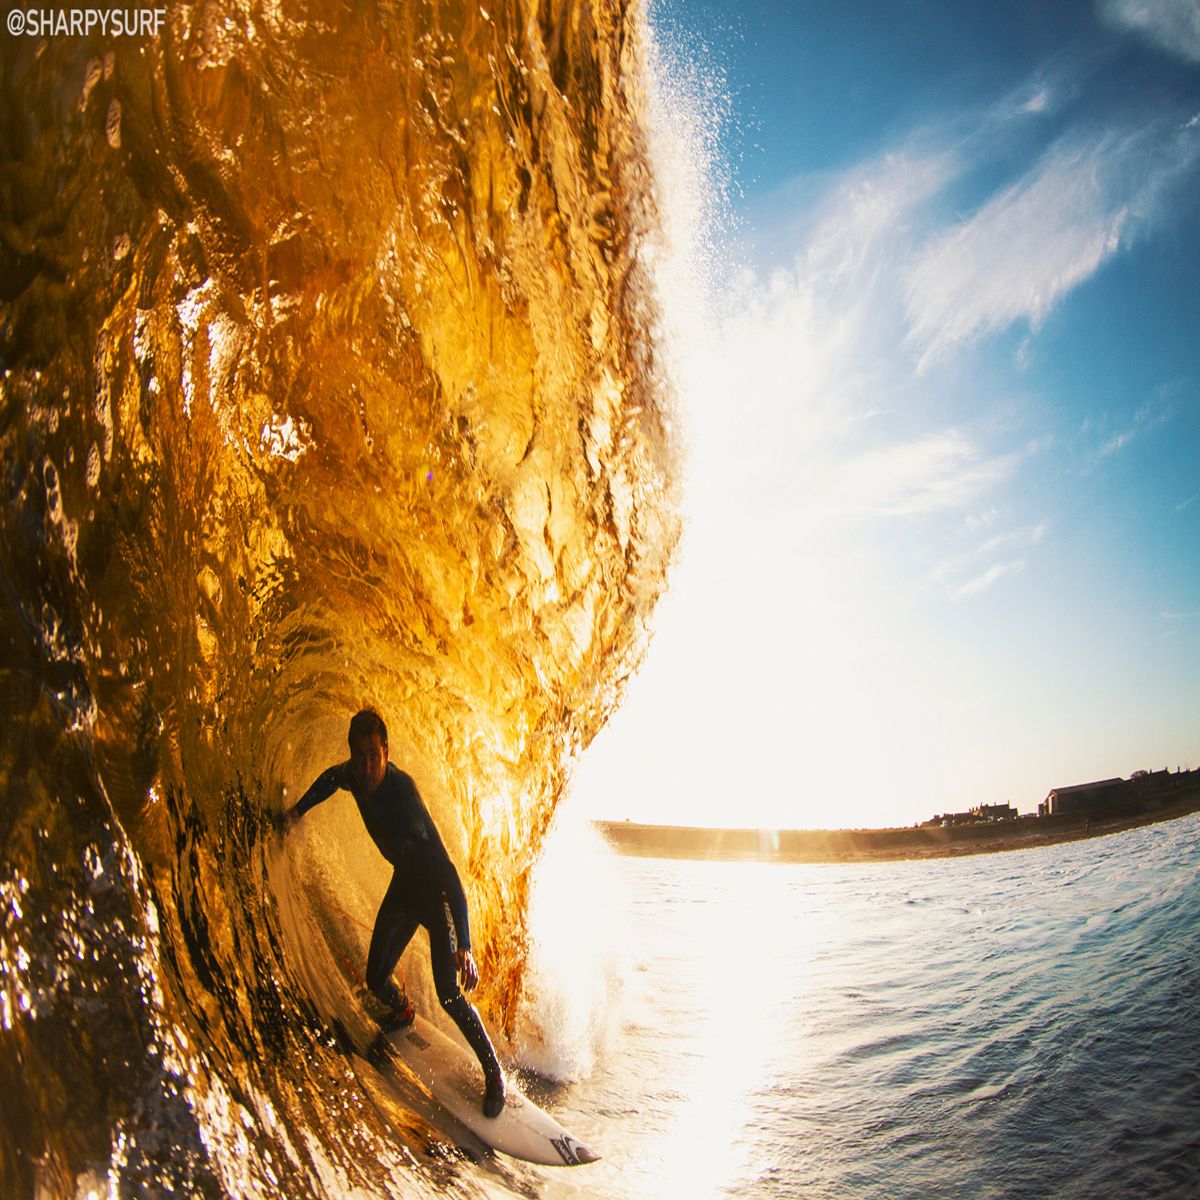 Roger-Sharp-Surf-Photographer-3.jpg